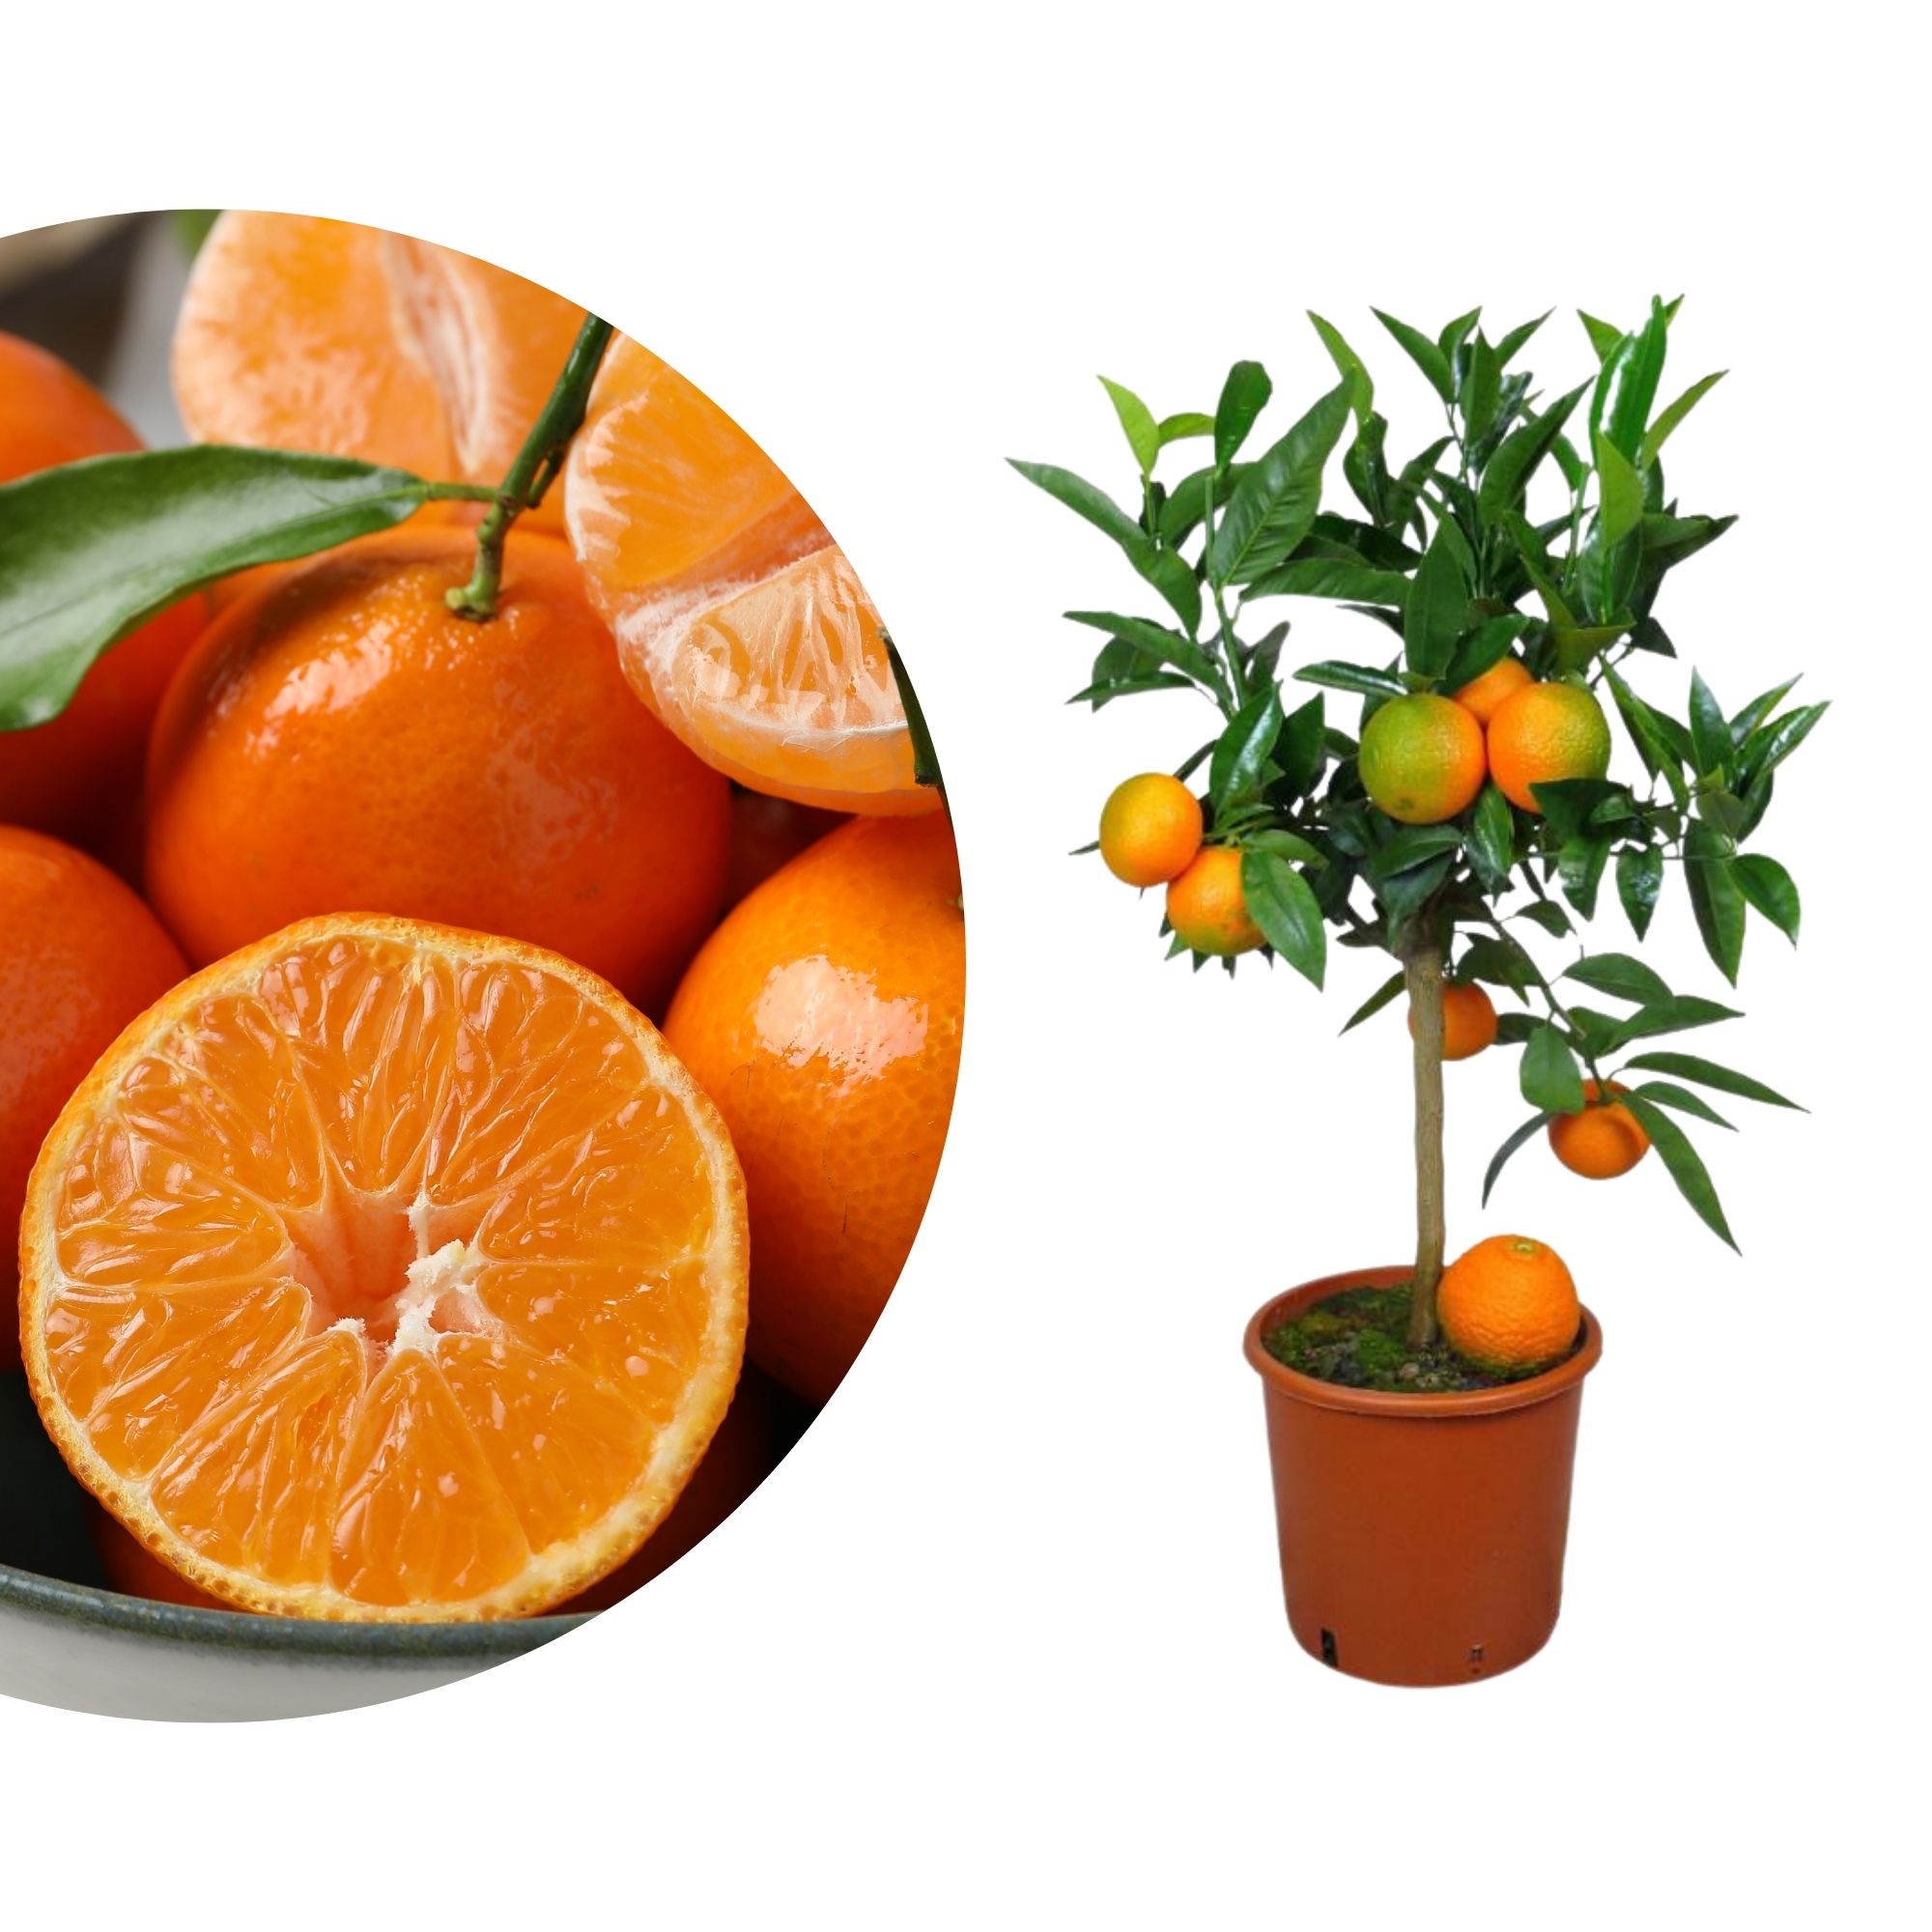 Clementinenbaum - Citrus clementina - Citrus reticulata 'Clementine'